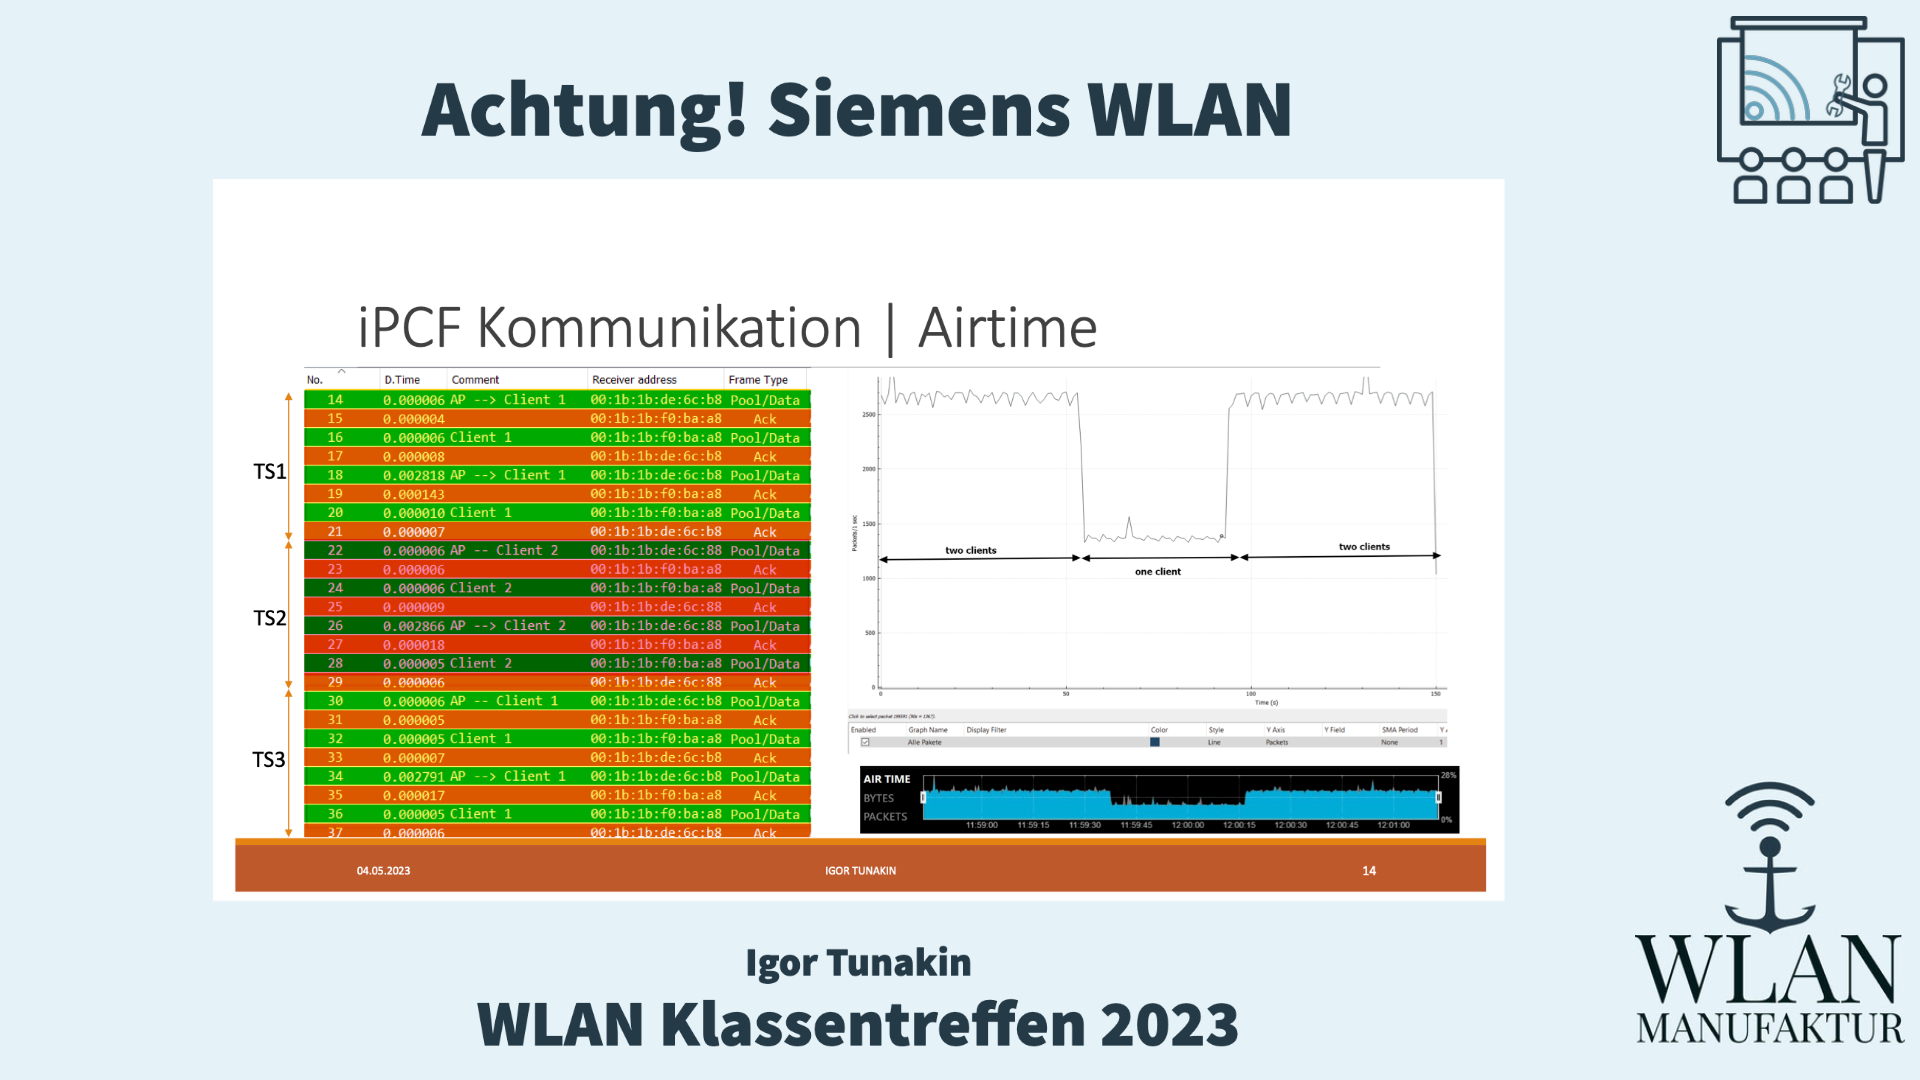 Load video: Aufzeichnung der Präsentation vom WLAN Klassentreffen - Achtung! Siemens WLAN